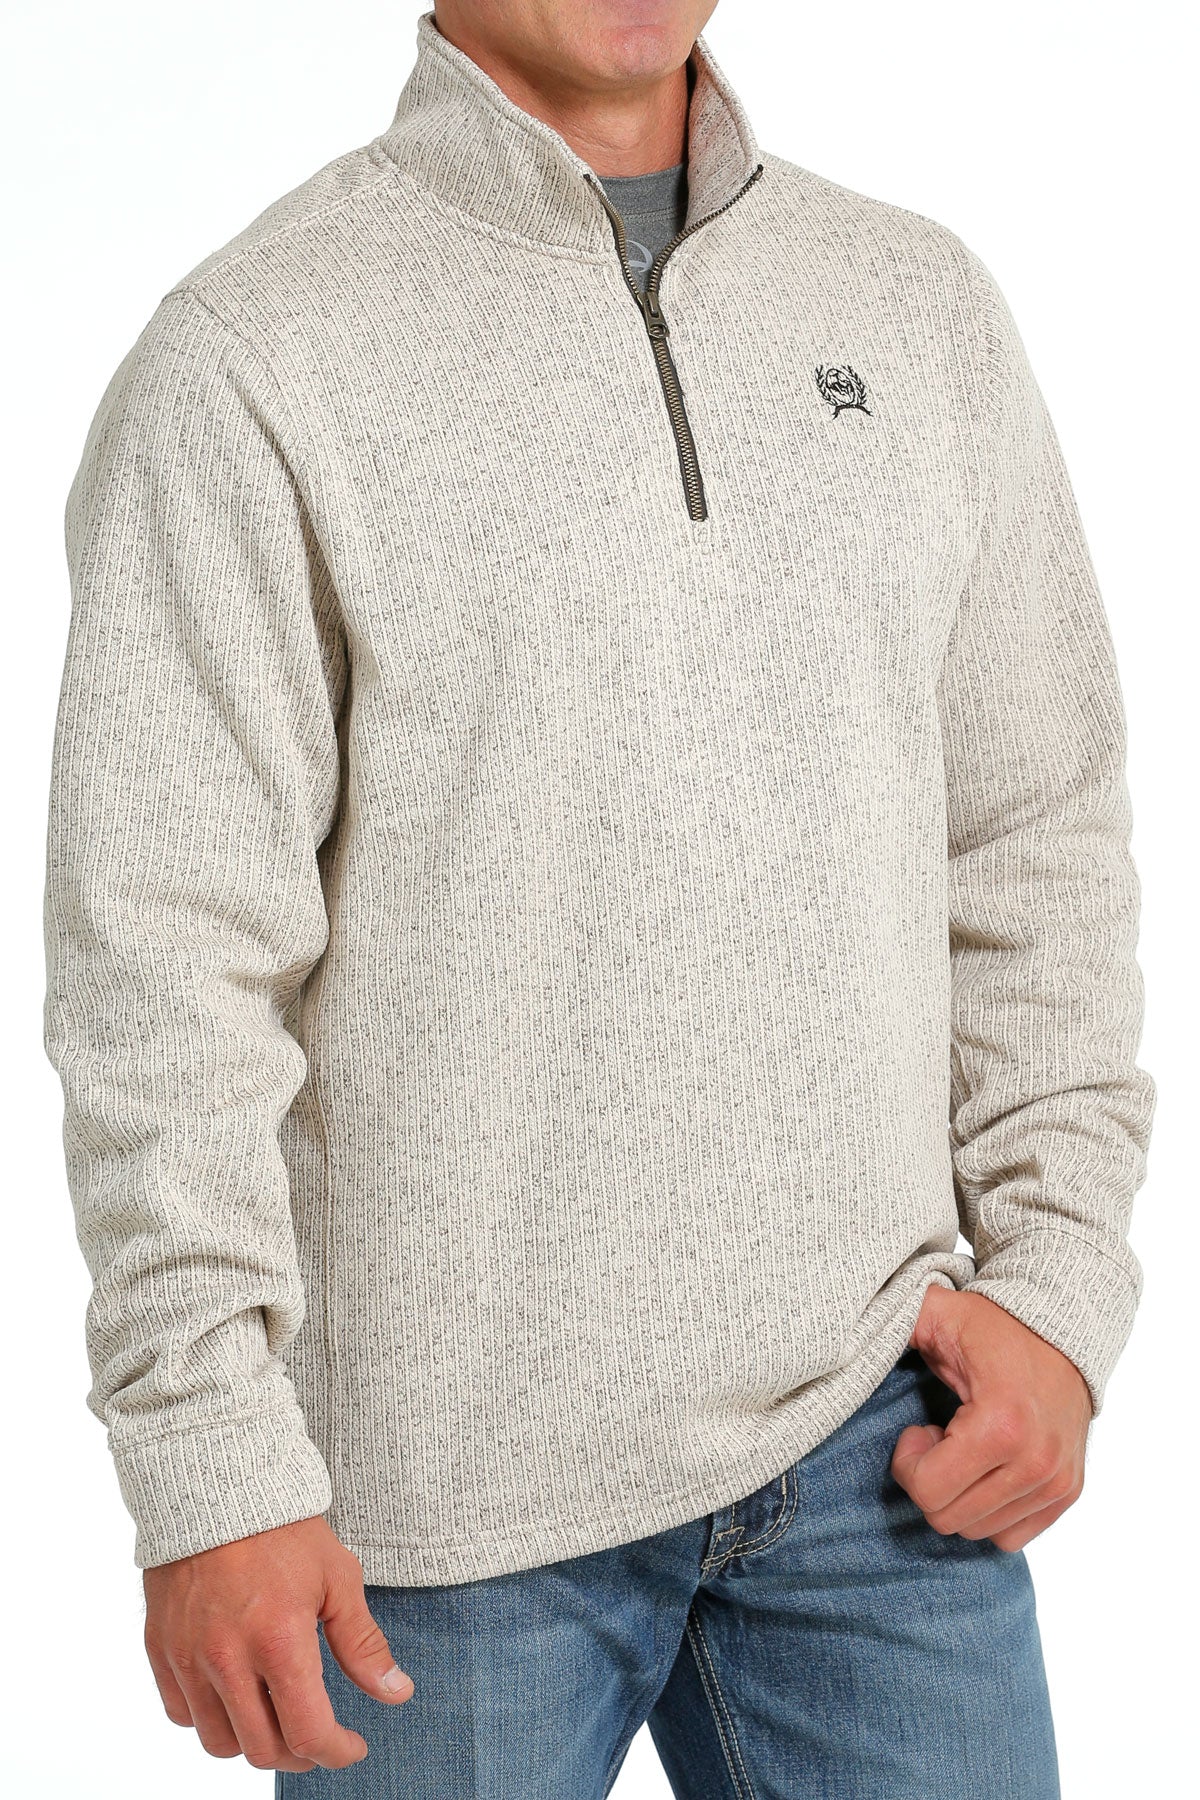 Men's Quarter Zip Ivory Sweater